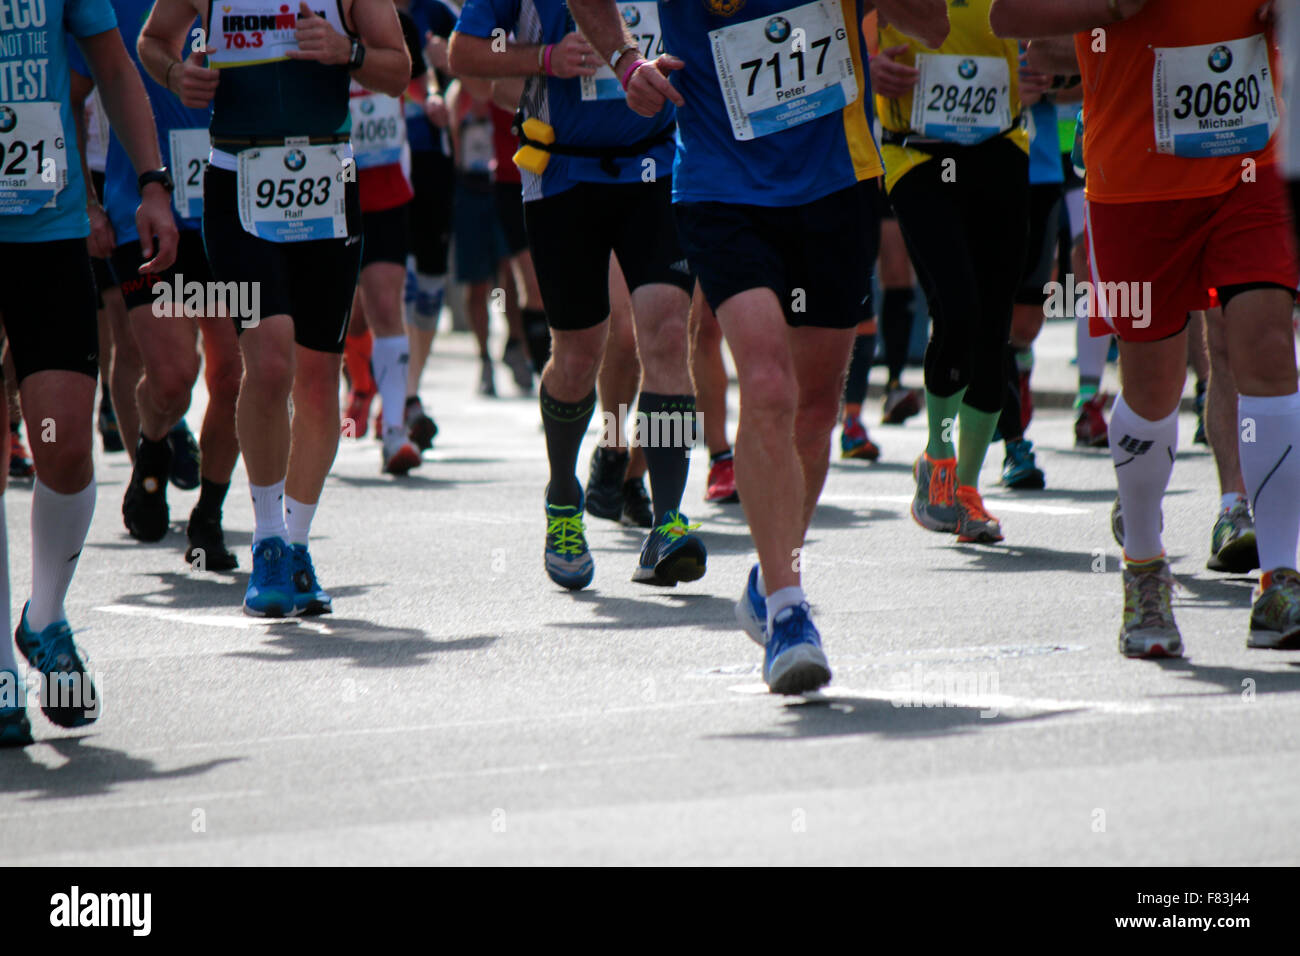 Impressionen - Berlin Marathon, 28. September 2014, Berlin-Mitte. Stock Photo